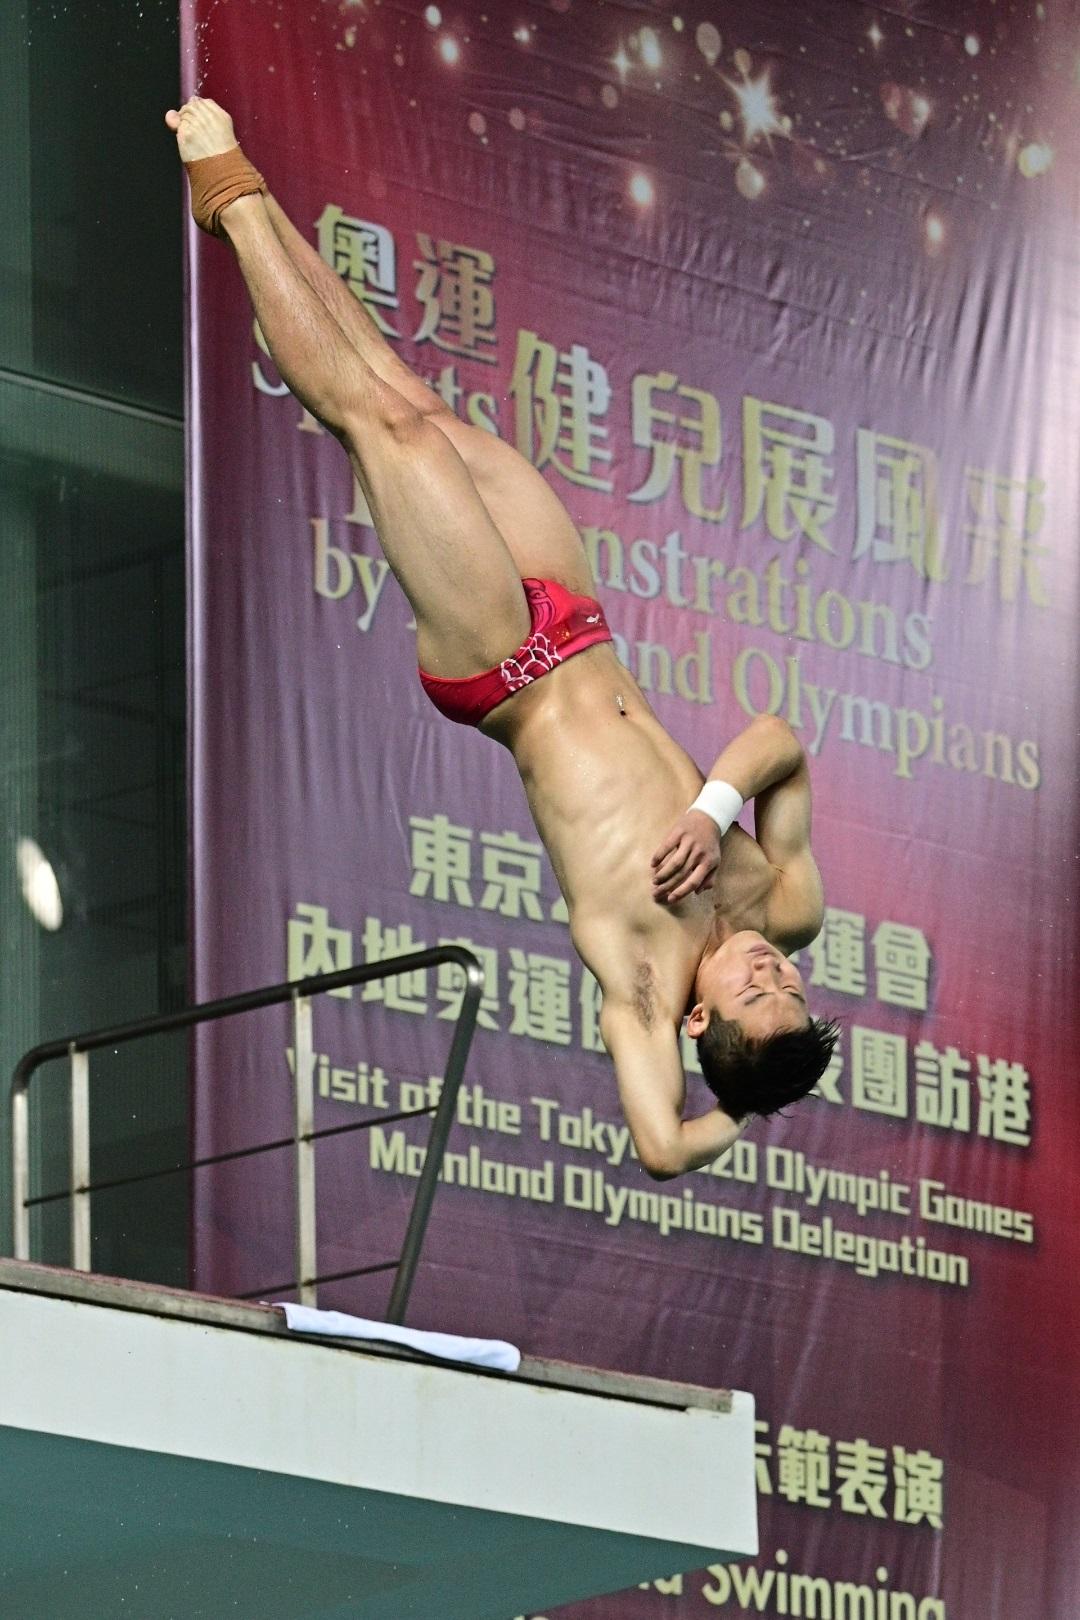 東京2020奧運會內地奧運健兒代表團今日（十二月四日）上午出席在維多利亞公園游泳池舉行的「奧運健兒展風采」運動示範。圖示內地跳水運動員王宗源作跳水示範表演，展示高超技藝。